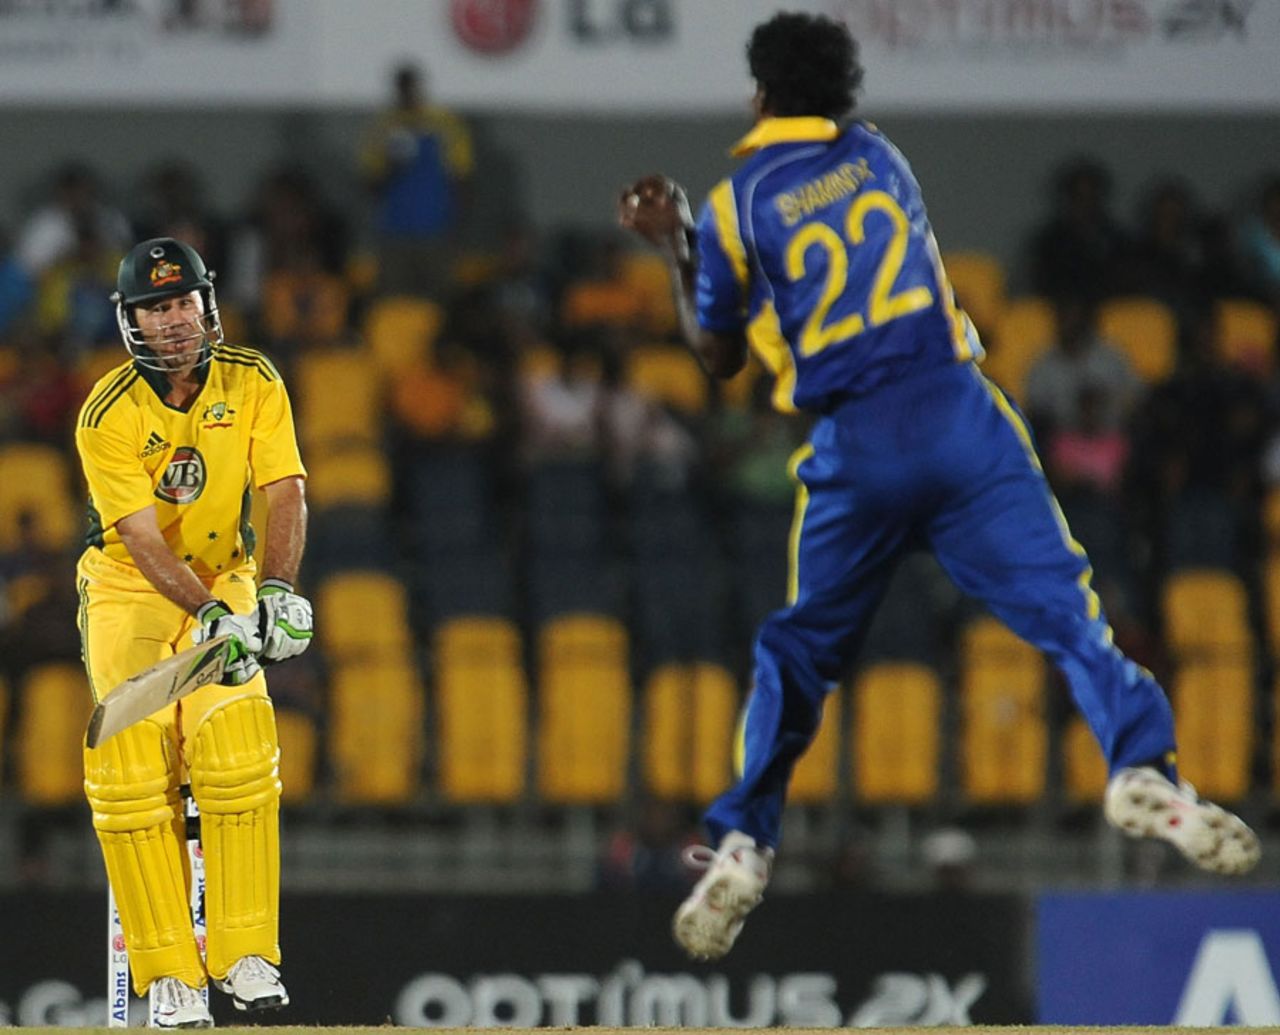 Ricky Ponting chips one straight back to Shaminda Eranga, Sri Lanka v Australia, 3rd ODI, Hambantota, August 16, 2011